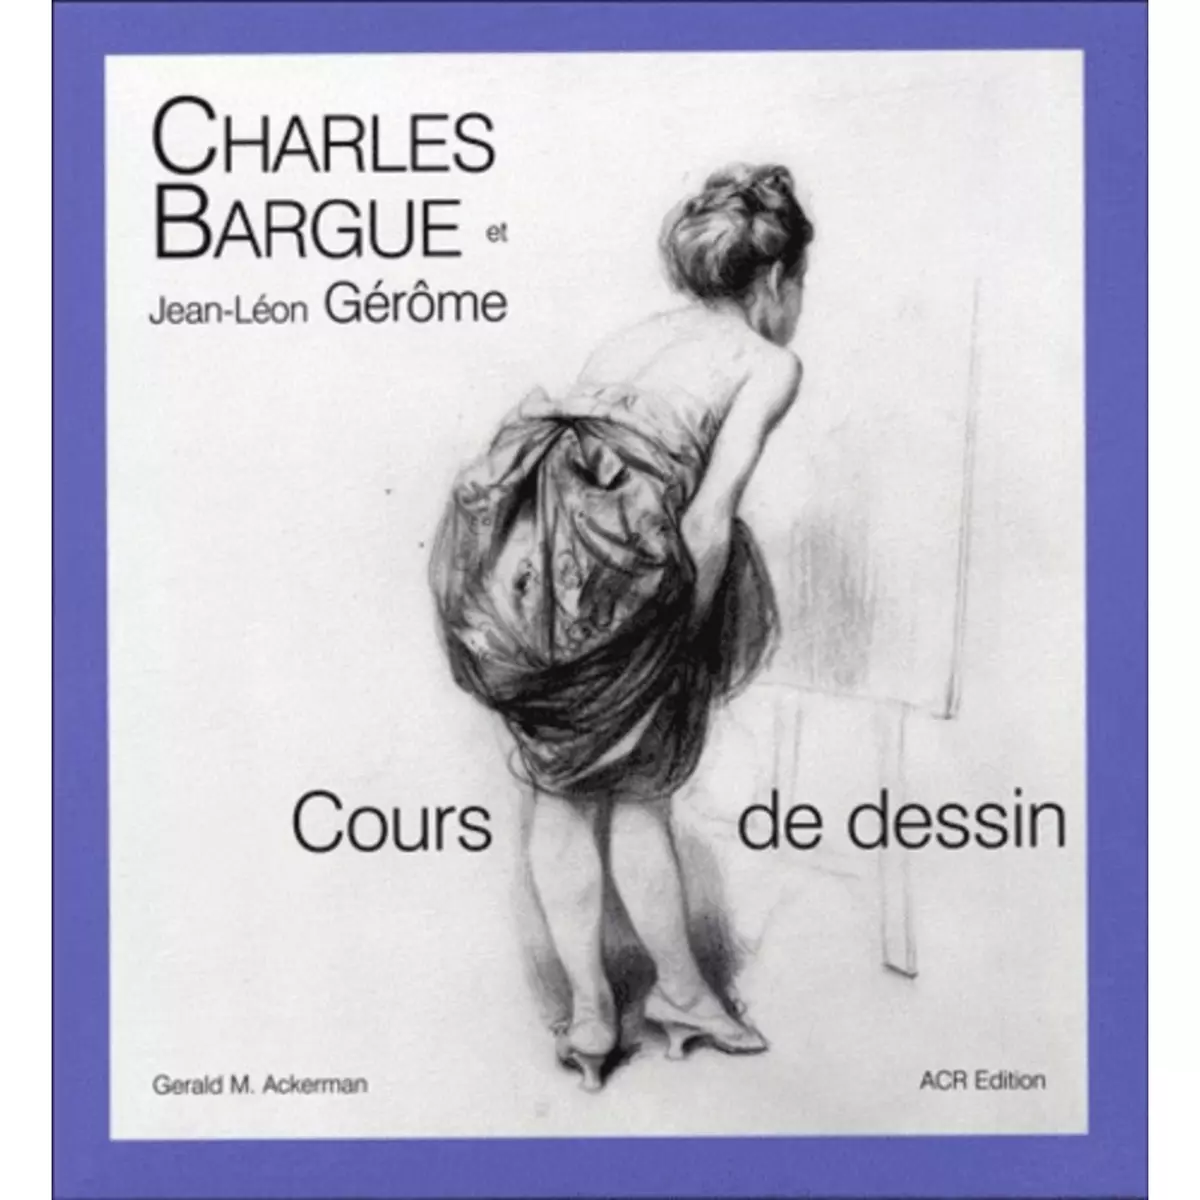  CHARLES BARQUE AVEC LE CONCOURS DE JEAN-LEON GEROME. COURS DE DESSIN, Ackerman Gerald M